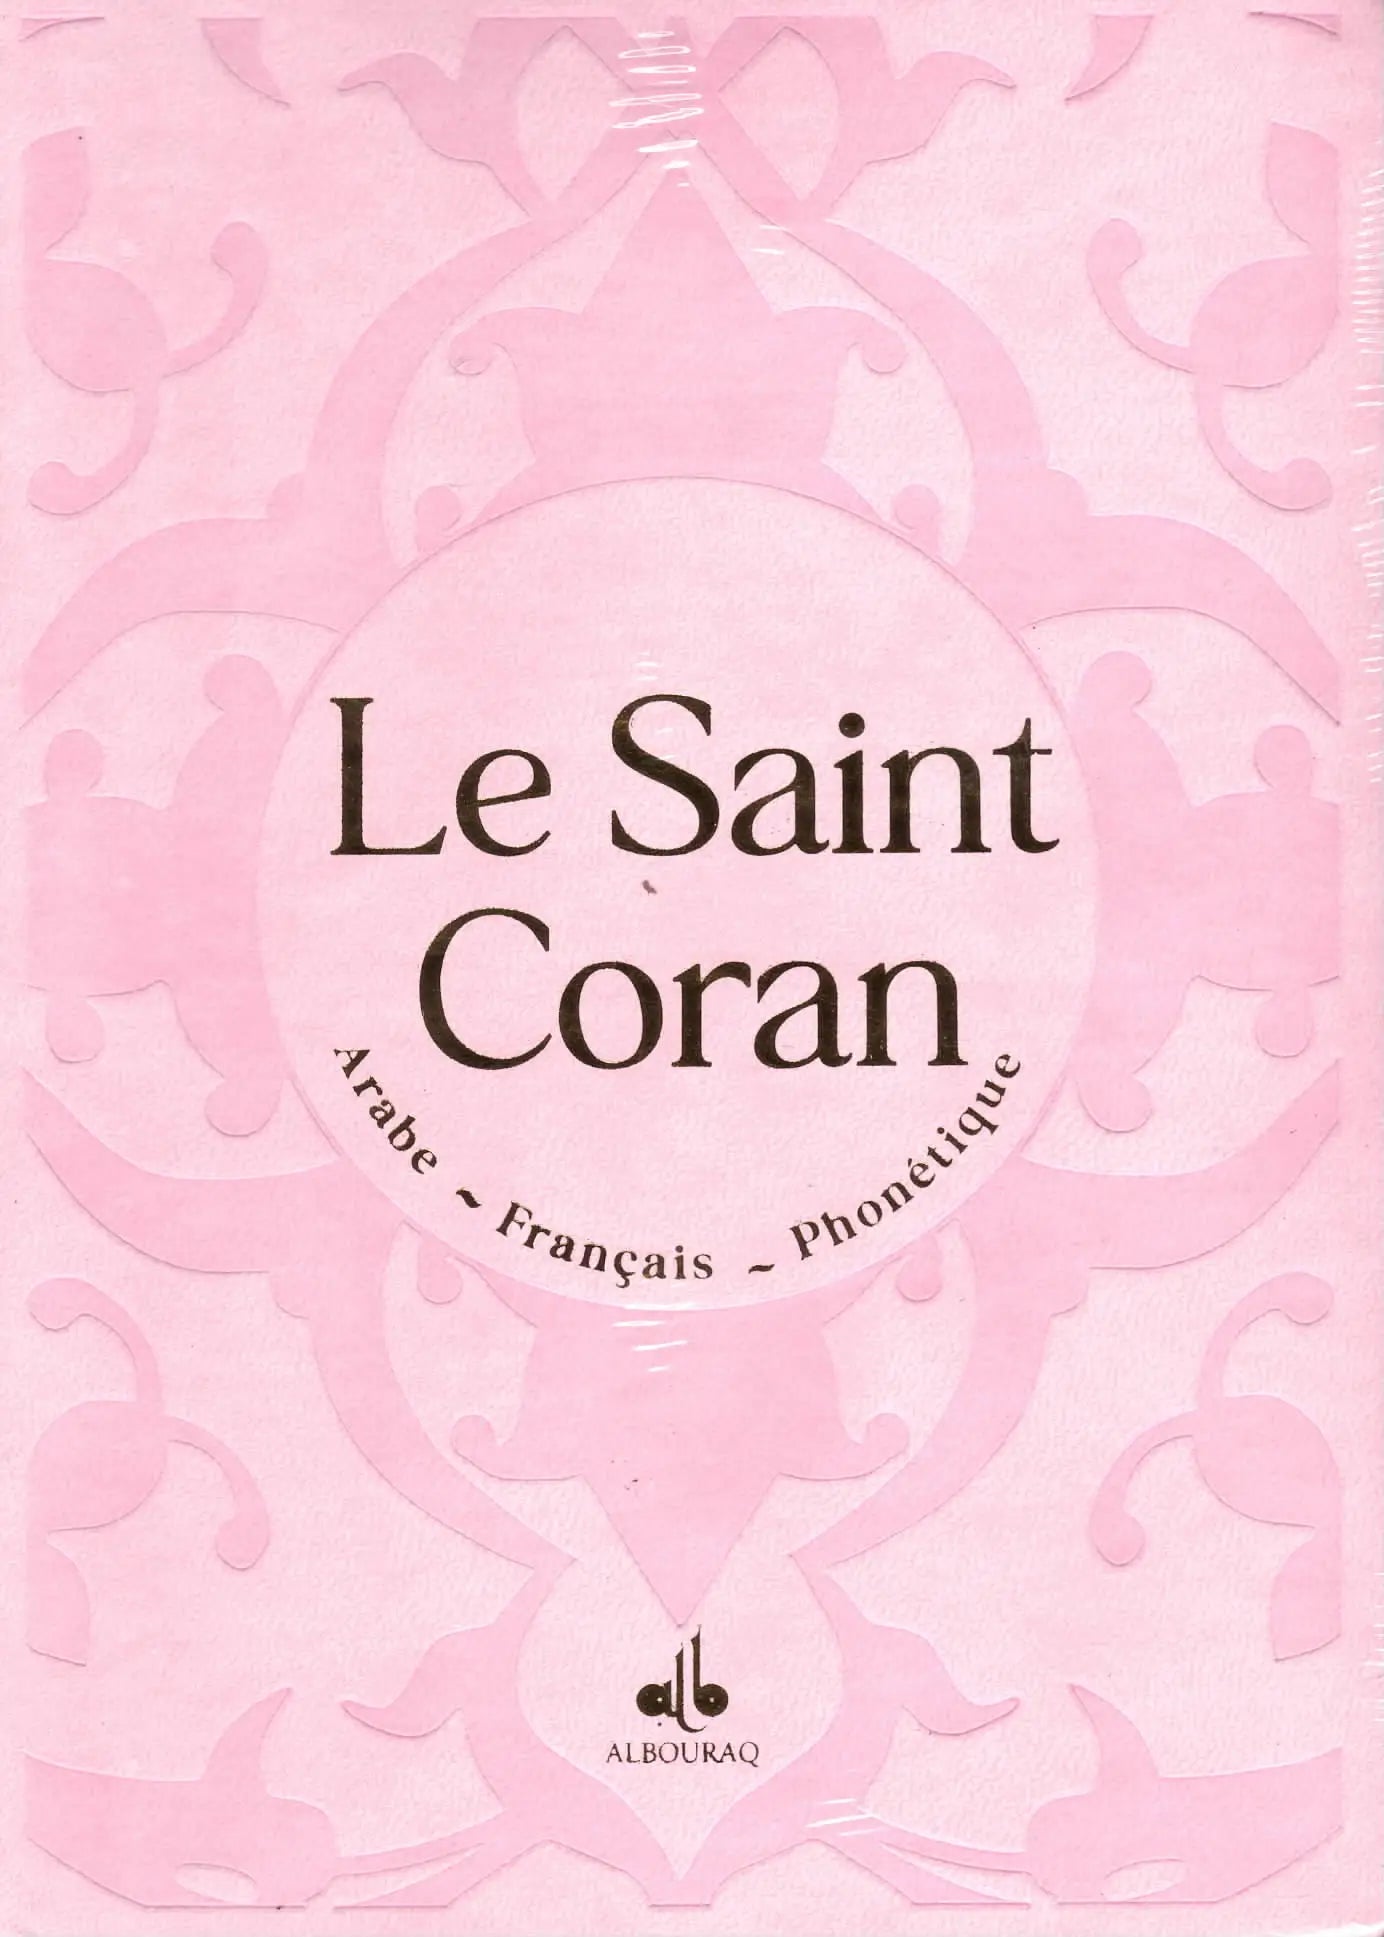 Le Saint Coran Rose Clair (Arabe - Français - Phonétique) - Éditions Al Bouraq